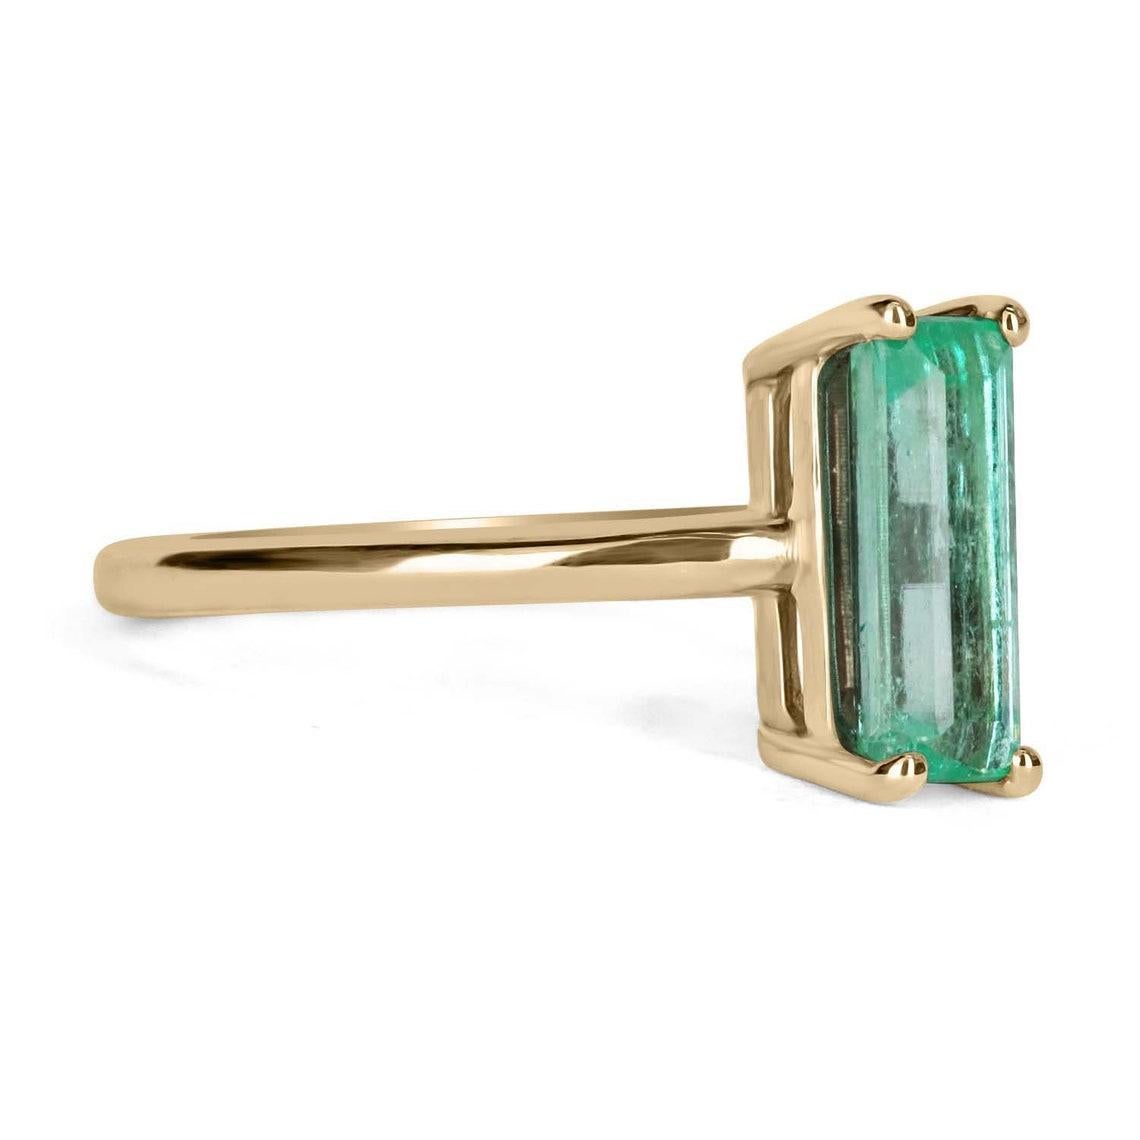 Gezeigt wird ein klassischer RARE kolumbianischen Smaragd Solitär Smaragd-Schliff Verlobung oder rechten Hand Ring in 14K Gelbgold. Dieser wunderschöne Solitärring trägt einen 1,90-karätigen Smaragd in einer Vier-Zacken-Fassung und ist in seiner